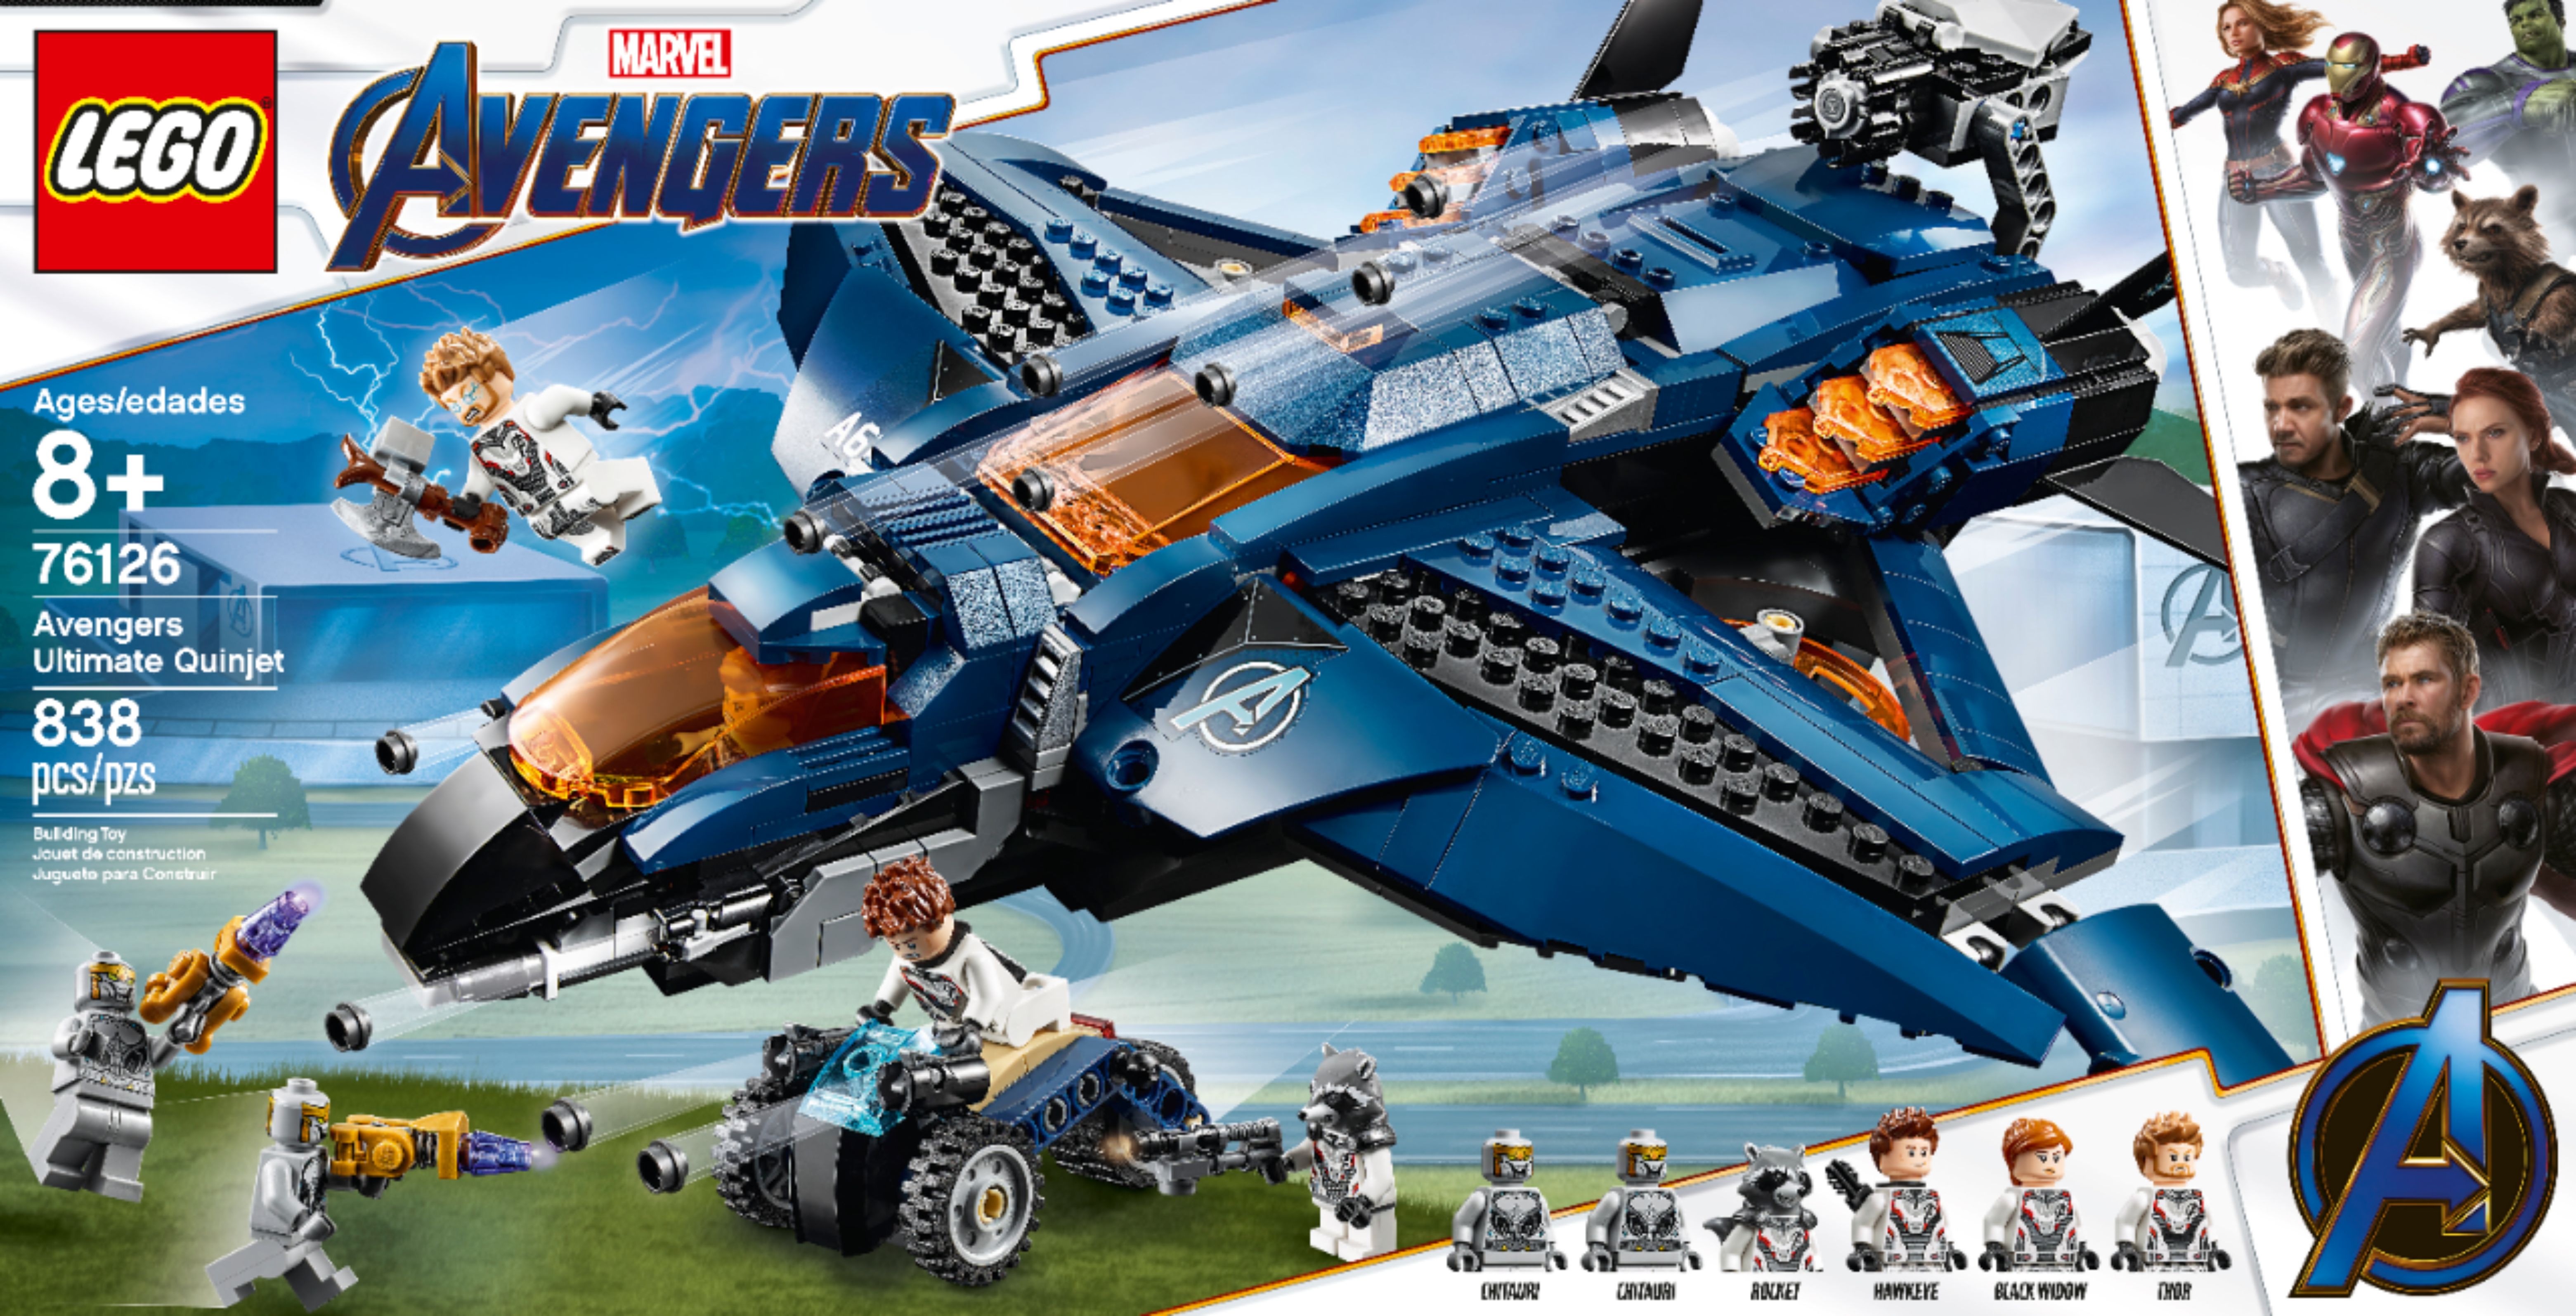 grå lungebetændelse Vend om Best Buy: LEGO Marvel Avengers Ultimate Quinjet 76126 6251490